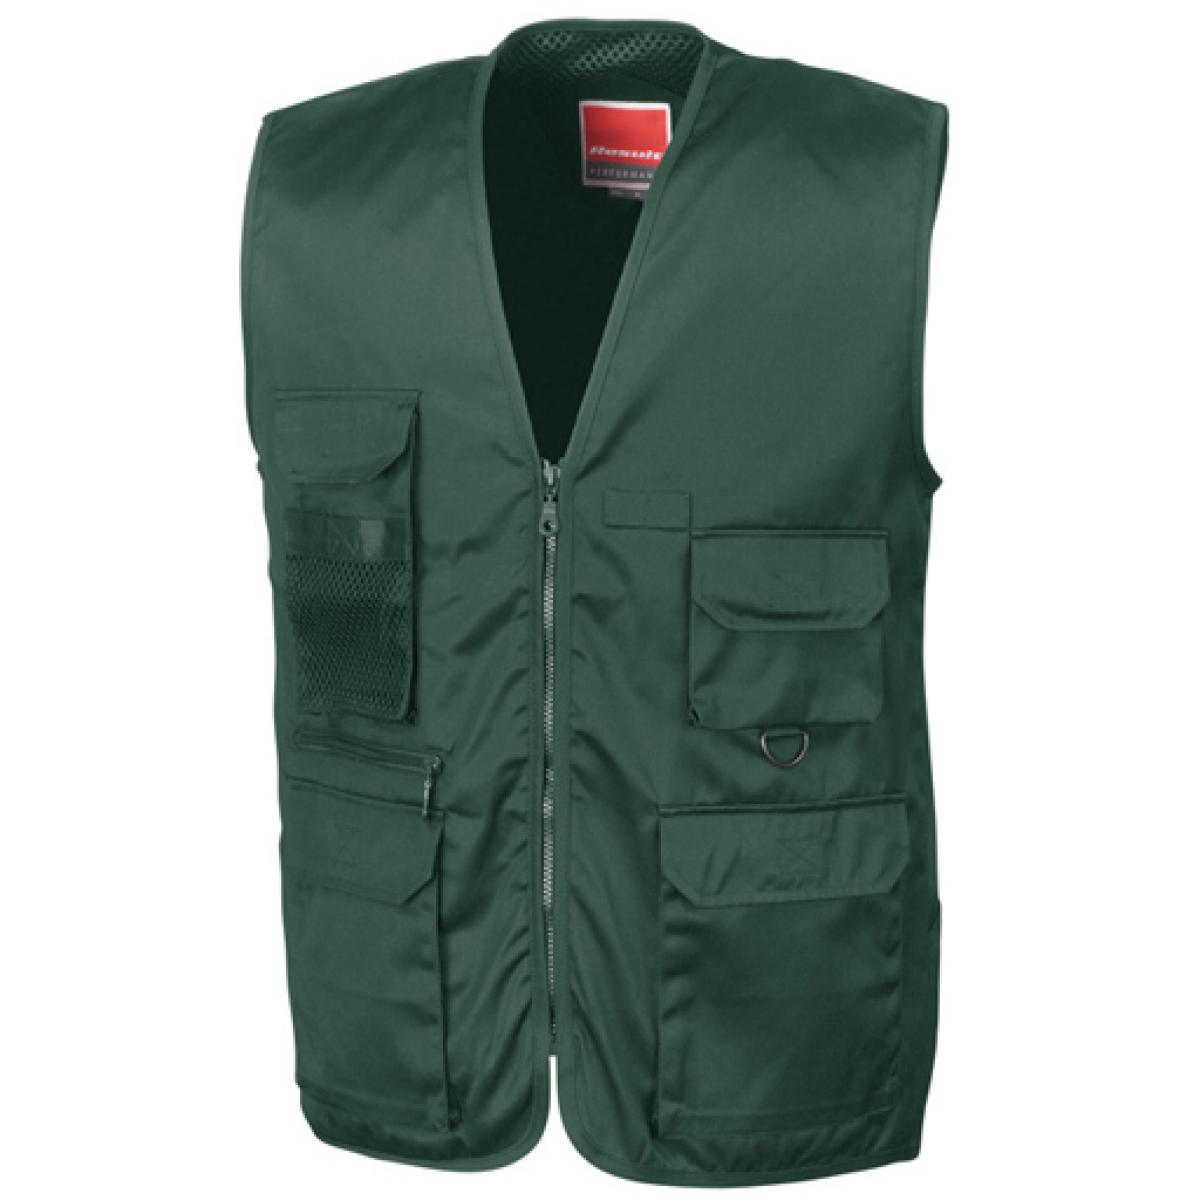 Hersteller: Result WORK-GUARD Herstellernummer: R45X Artikelbezeichnung: Herren Arbeitsweste Safari Vest Farbe: Lichen Green